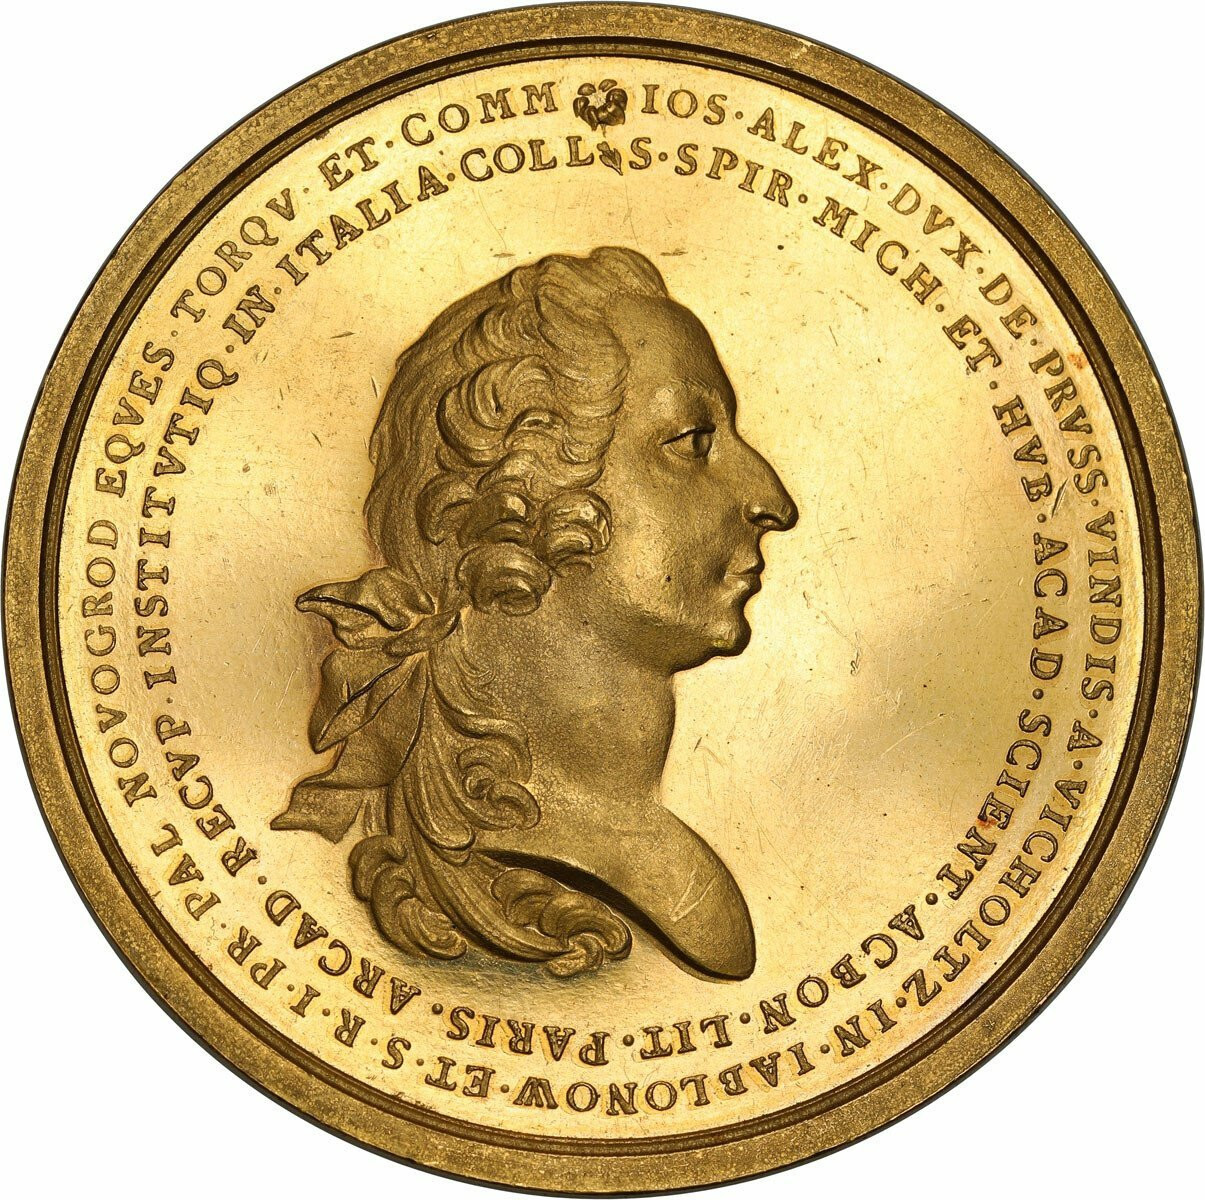 Poniatowski. ZŁOTY medal nagrodowy Towarzystwa Naukowego Jabłonowskiego wagi 23 dukatów – JEDYNY